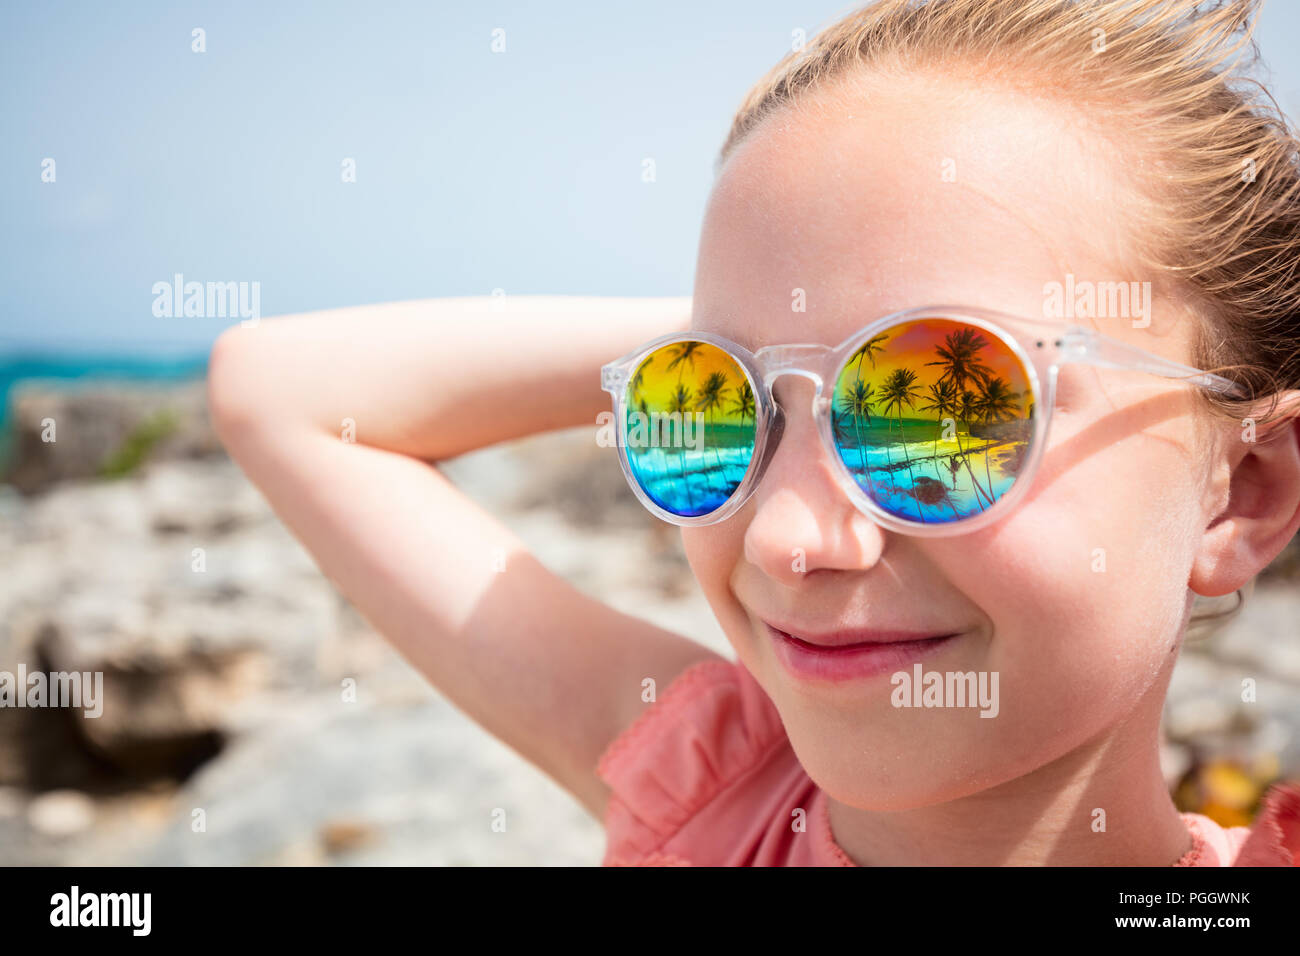 Adorabile bambina in spiaggia durante le vacanze estive indossando occhiali da sole riflettente spiaggia tropicale con palme Foto Stock